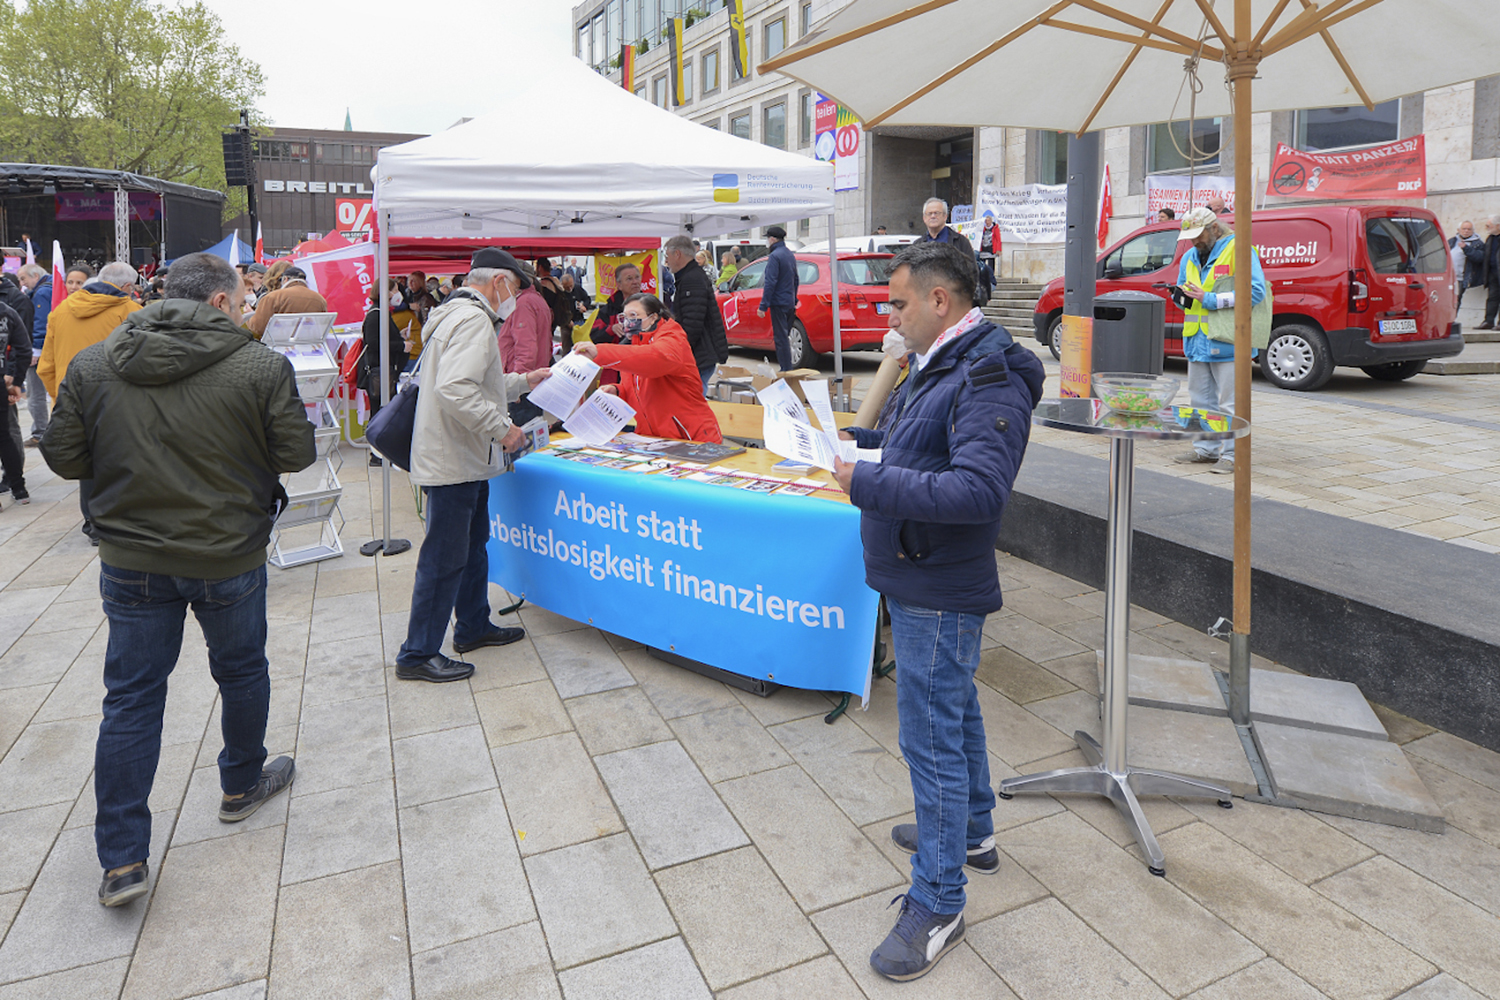 Auf dem Marktplatz vor dem Stuttgarter Rathaus: Infostand der Neuen Arbeit am 1. Mai 2022